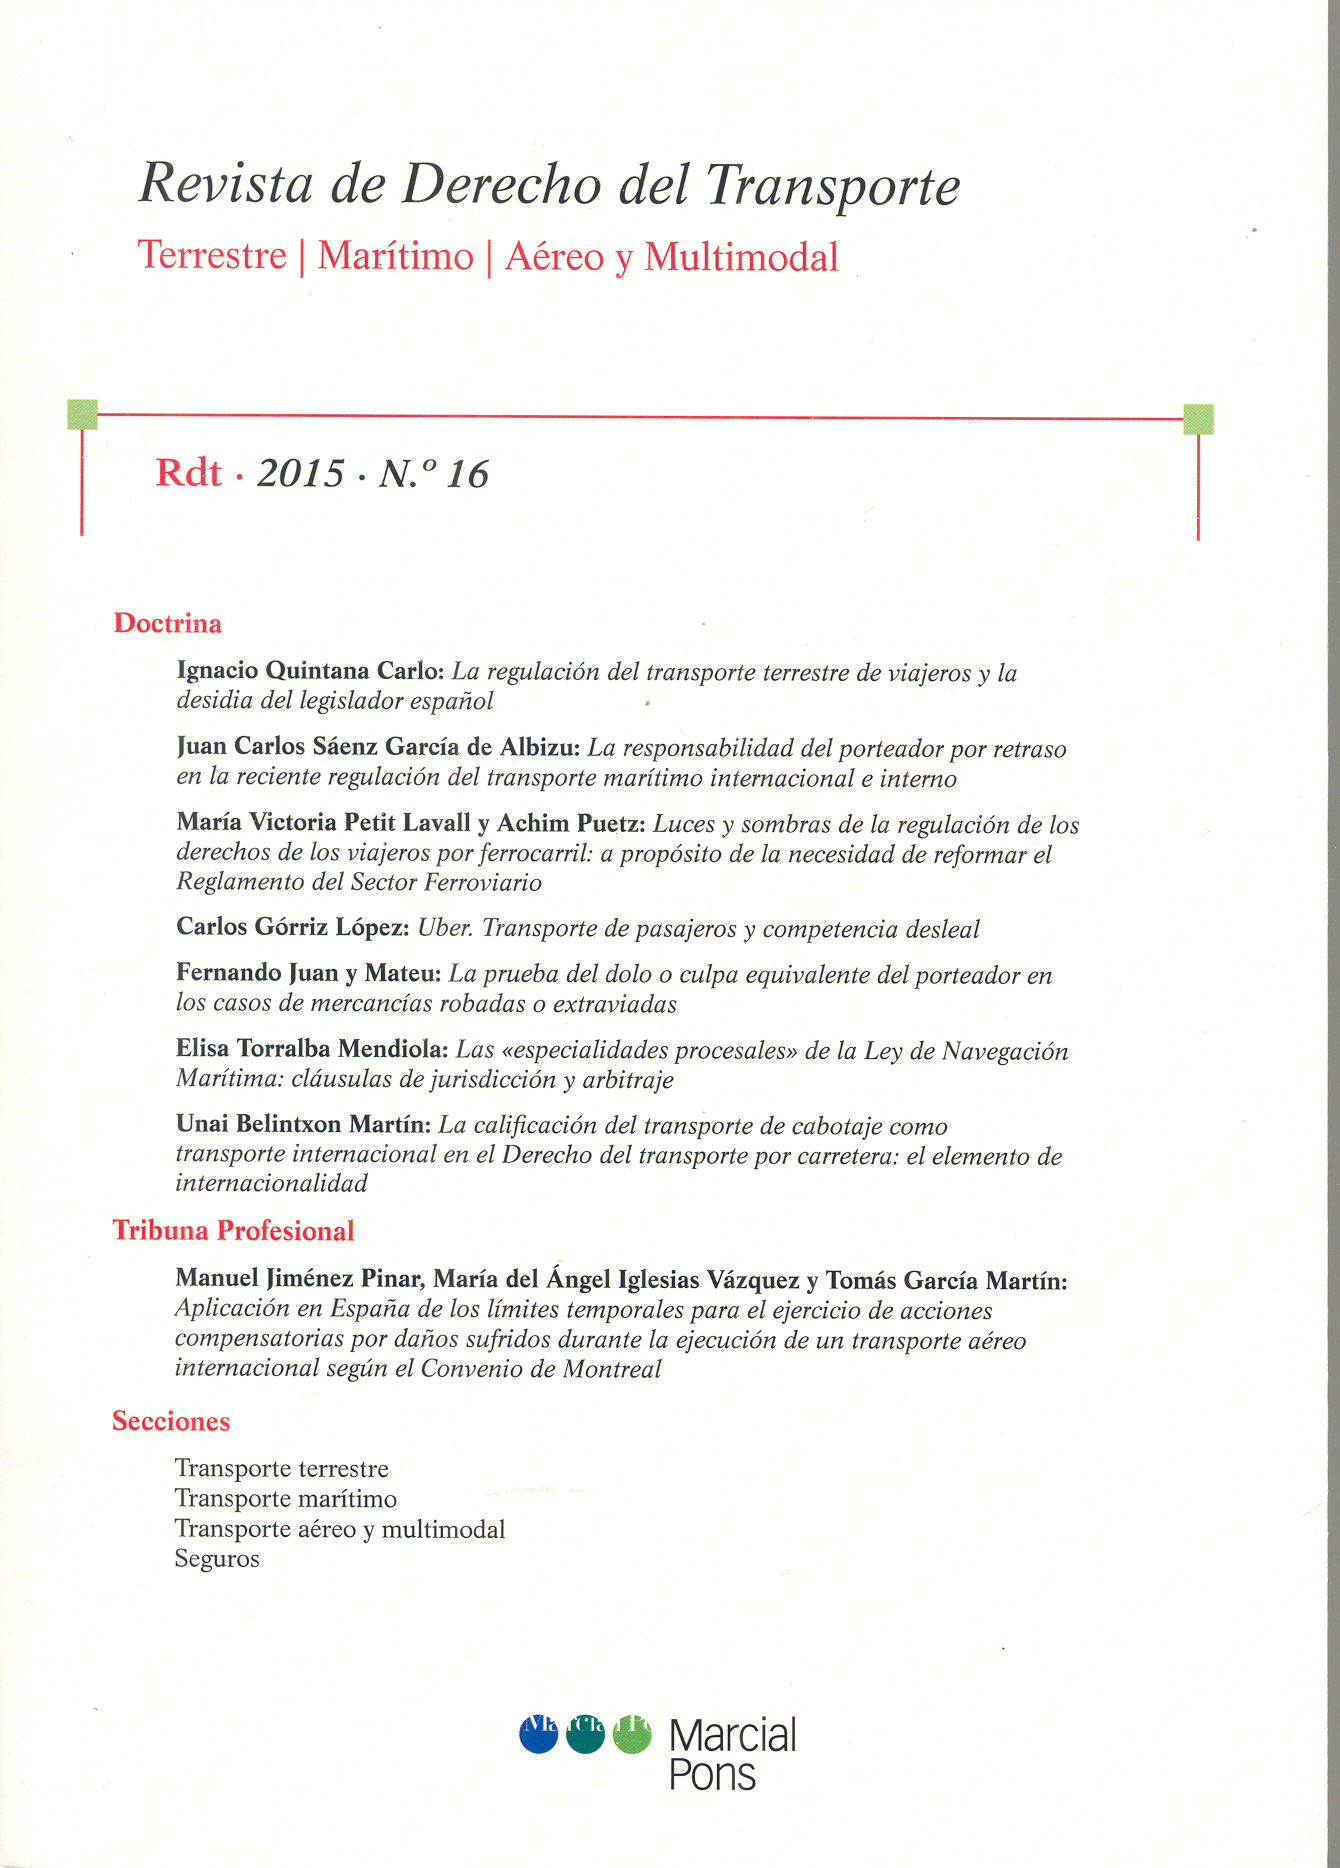 Revista de Derecho del Transporte, Nº16, año 2015